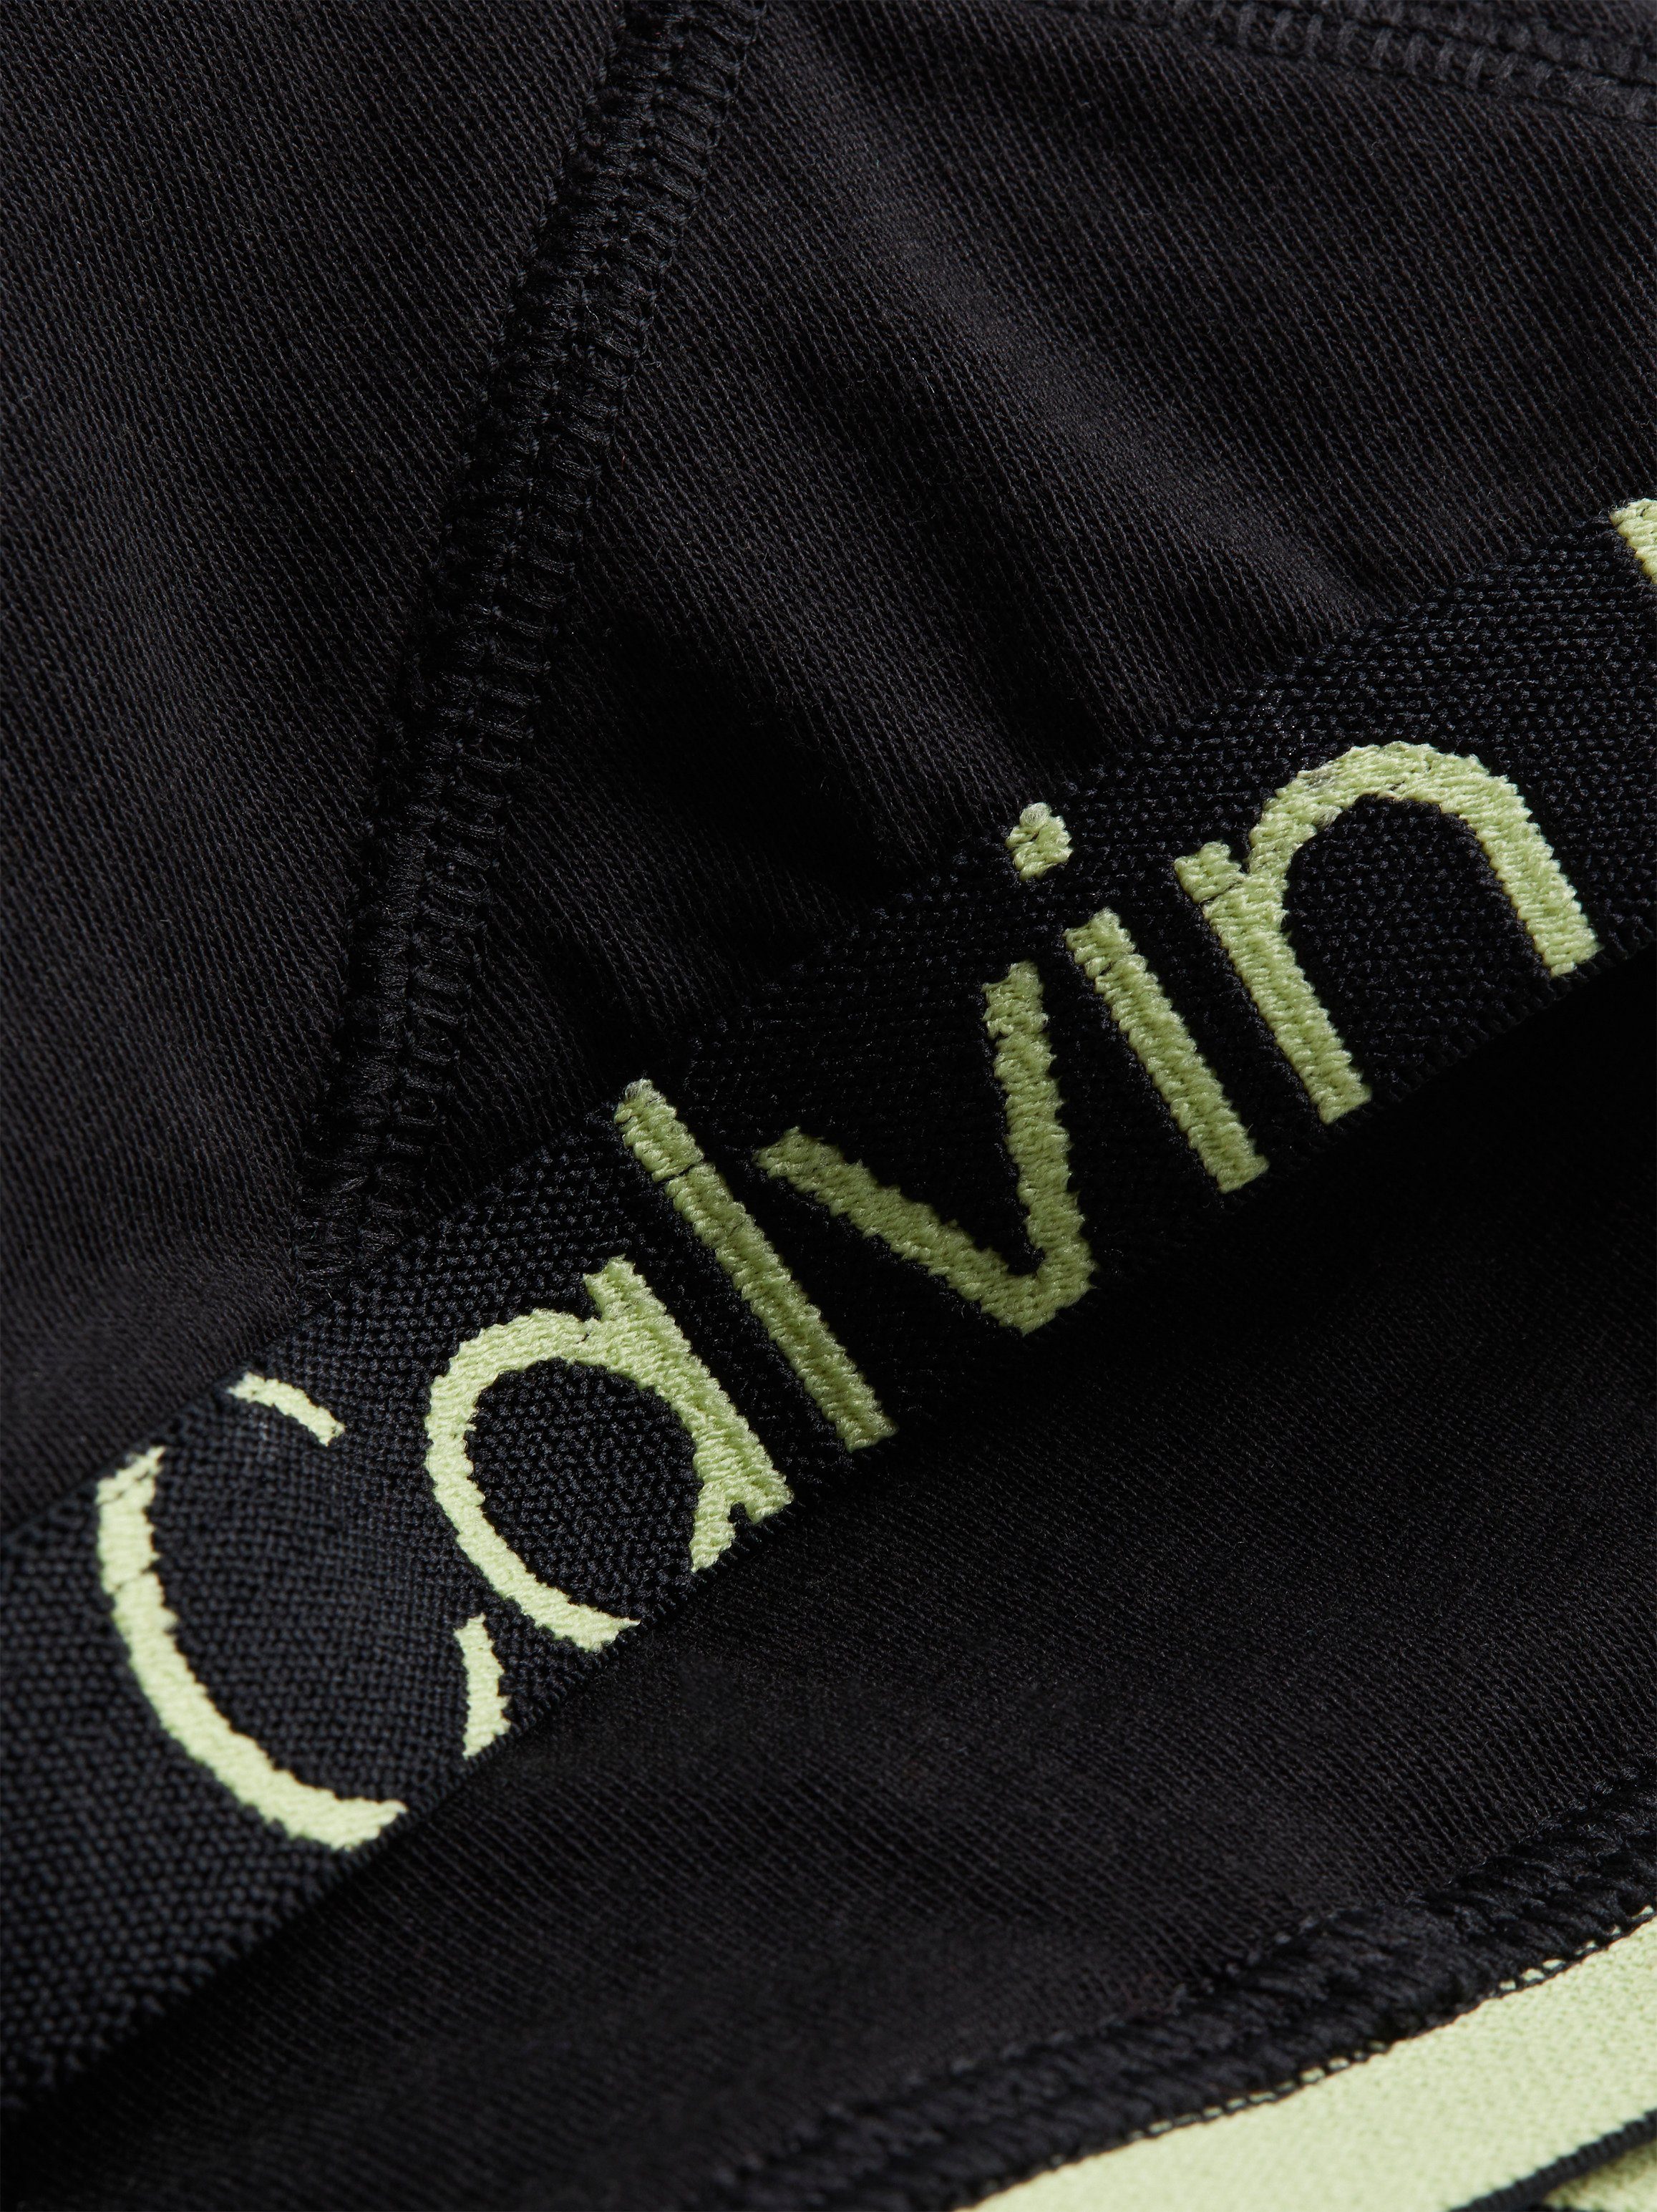 Calvin Klein Underwear Bralette-BH UNLINED BRALETTE mit sportlichem Elastikbund schwarz